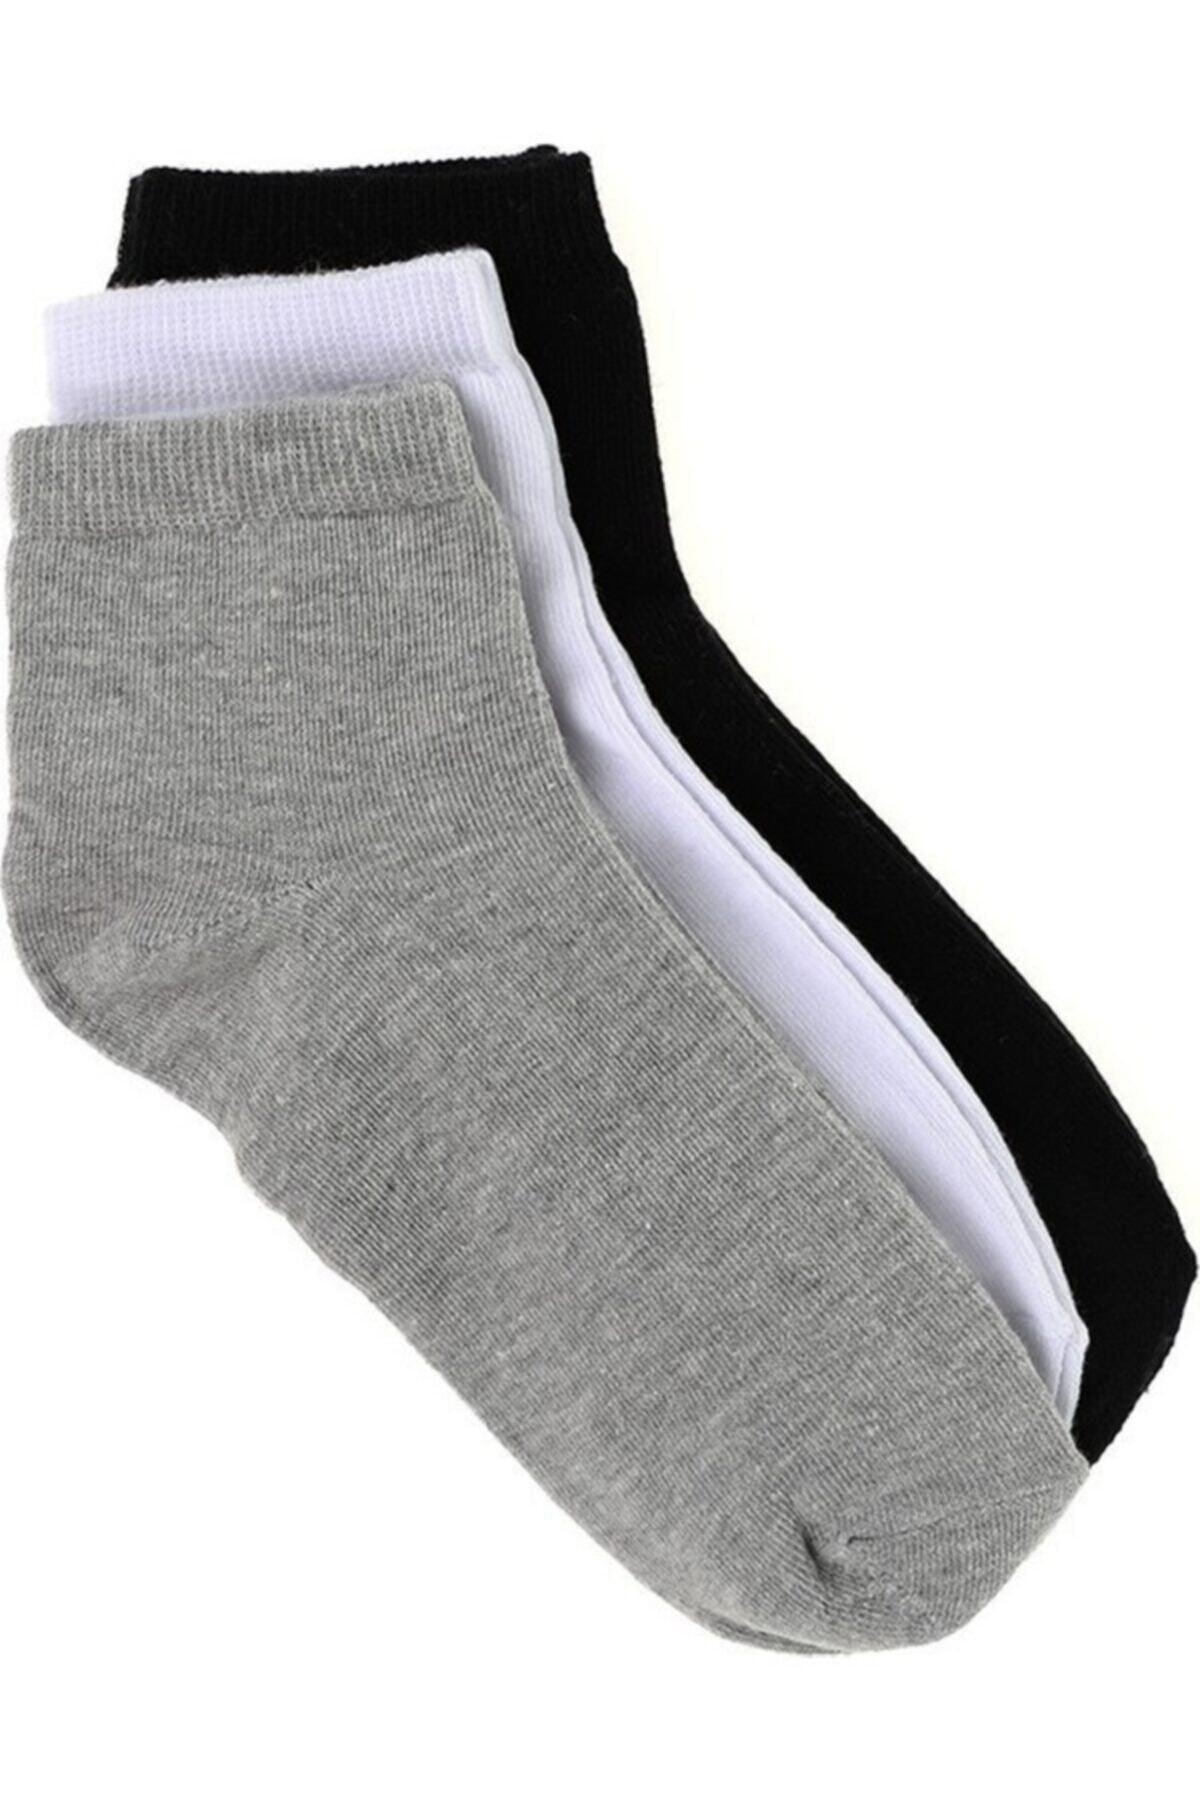 HARMAN TEKSTİL Kaliteli 12 Çift Erkek Patik Çorap - Spor Ayakkabı Kısa Soket Çorabı Beyaz-siyah-gri 40-45 Numara